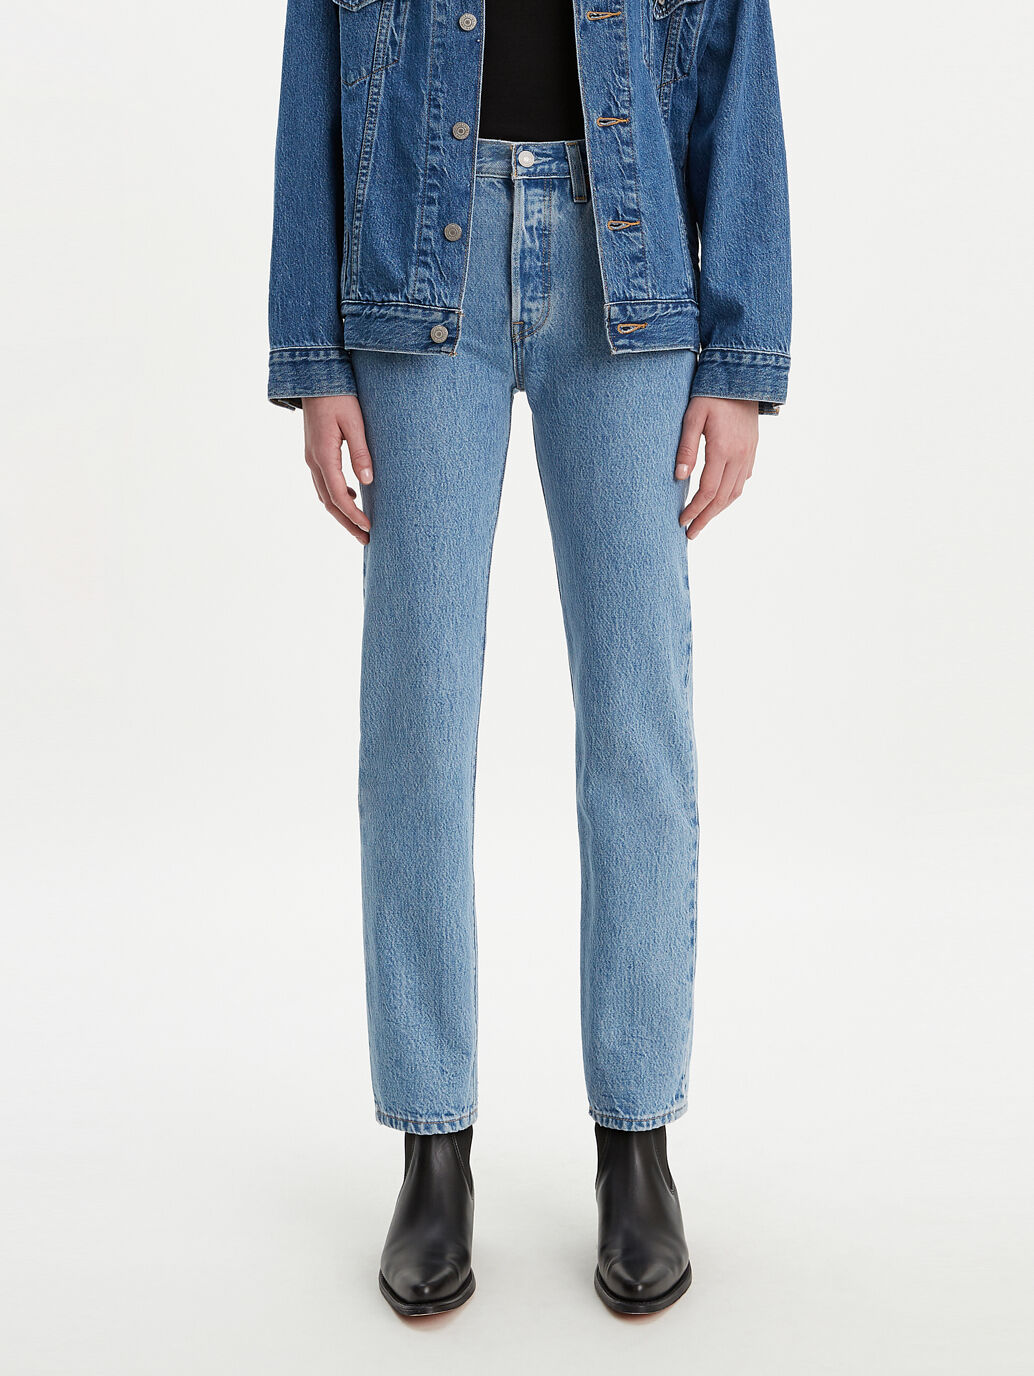 Levi's® Australia 501® Original Fit Jeans Luxor Indigo